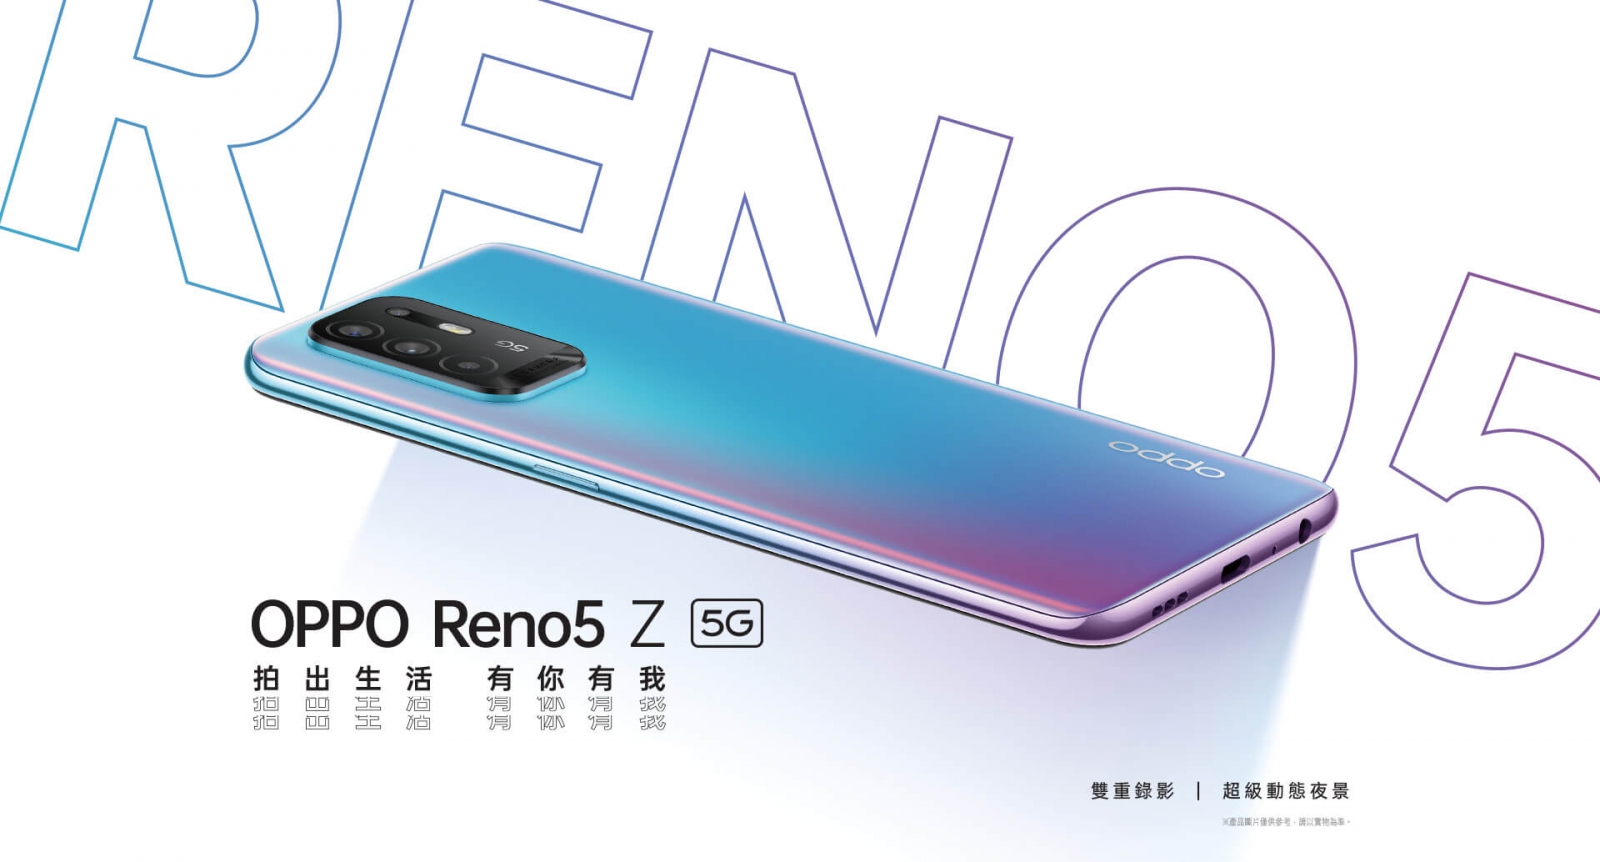 【手機專知】OPPO Reno5 Z跟Reno5的不同差異為何?消費者該怎麼選擇?